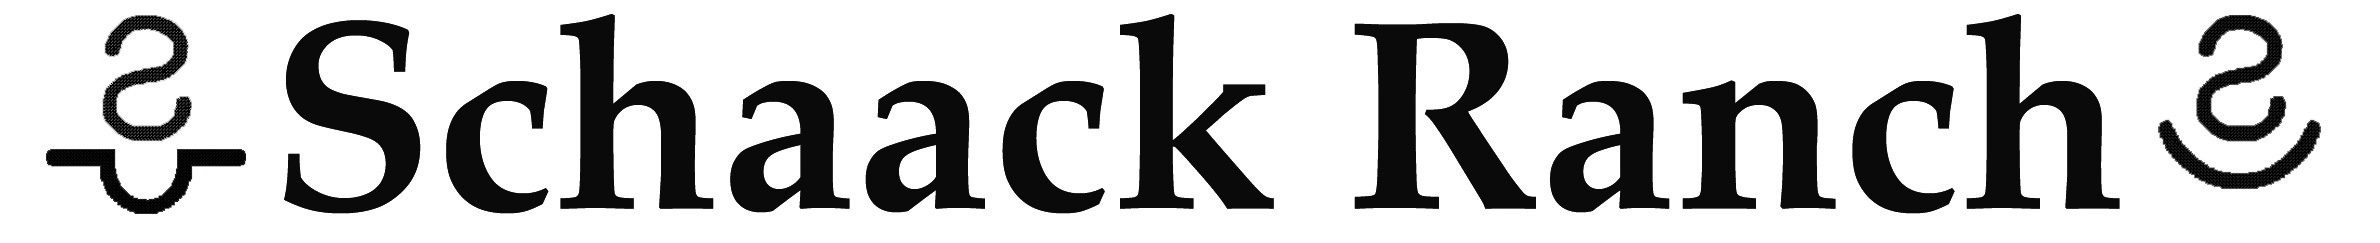 schaack logo